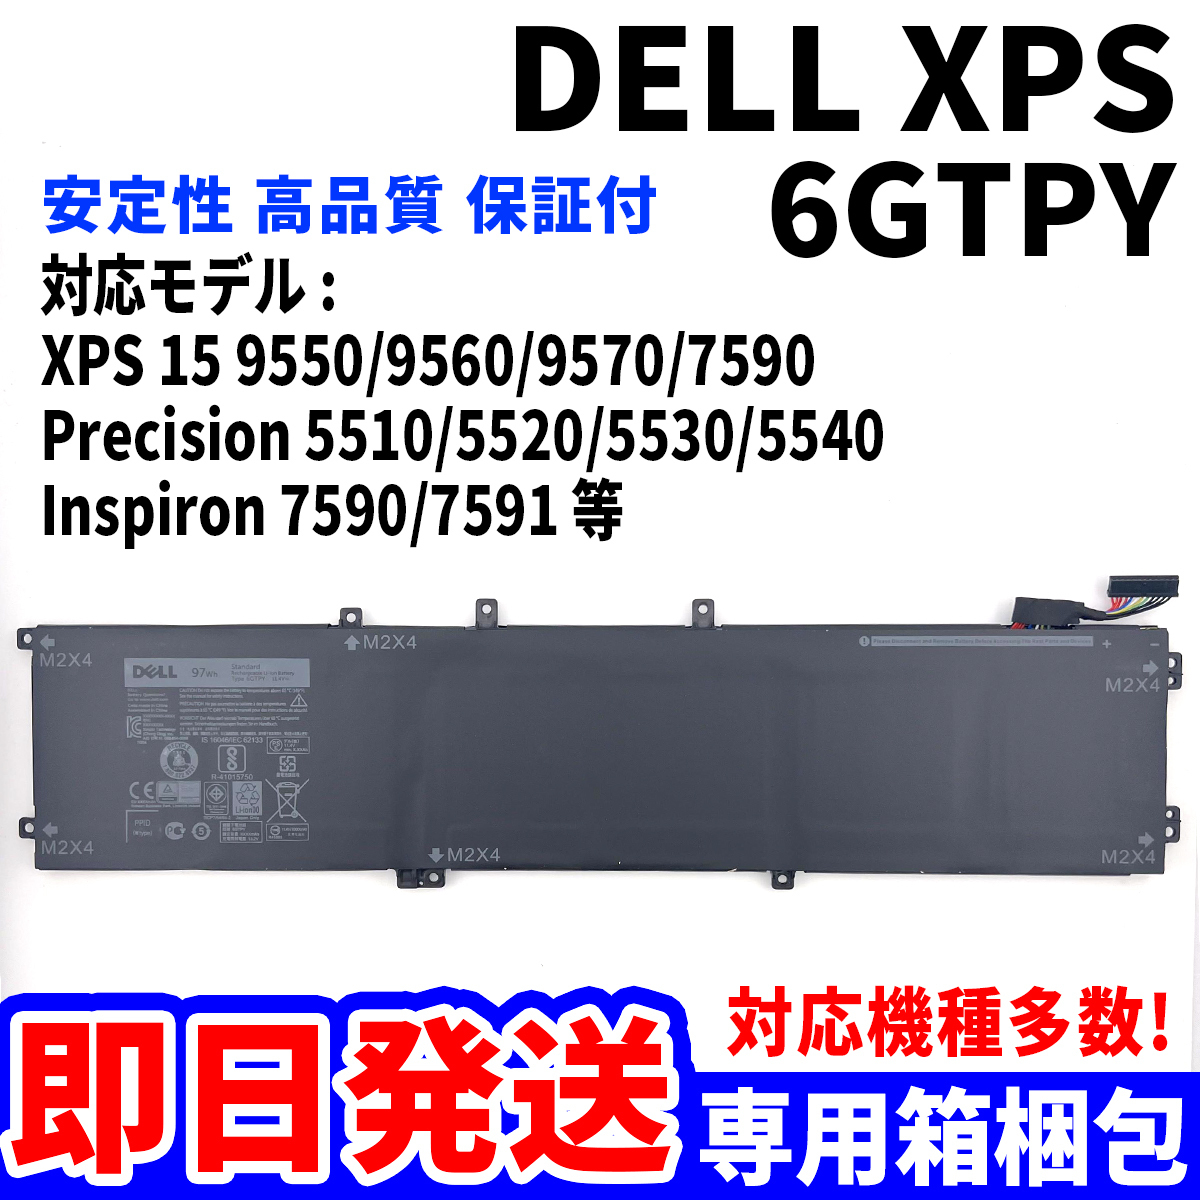 新品! DELL XPS Precision Inspiron シリーズ 6GTPY バッテリー 電池パック交換 パソコン 内蔵battery 単品_画像1